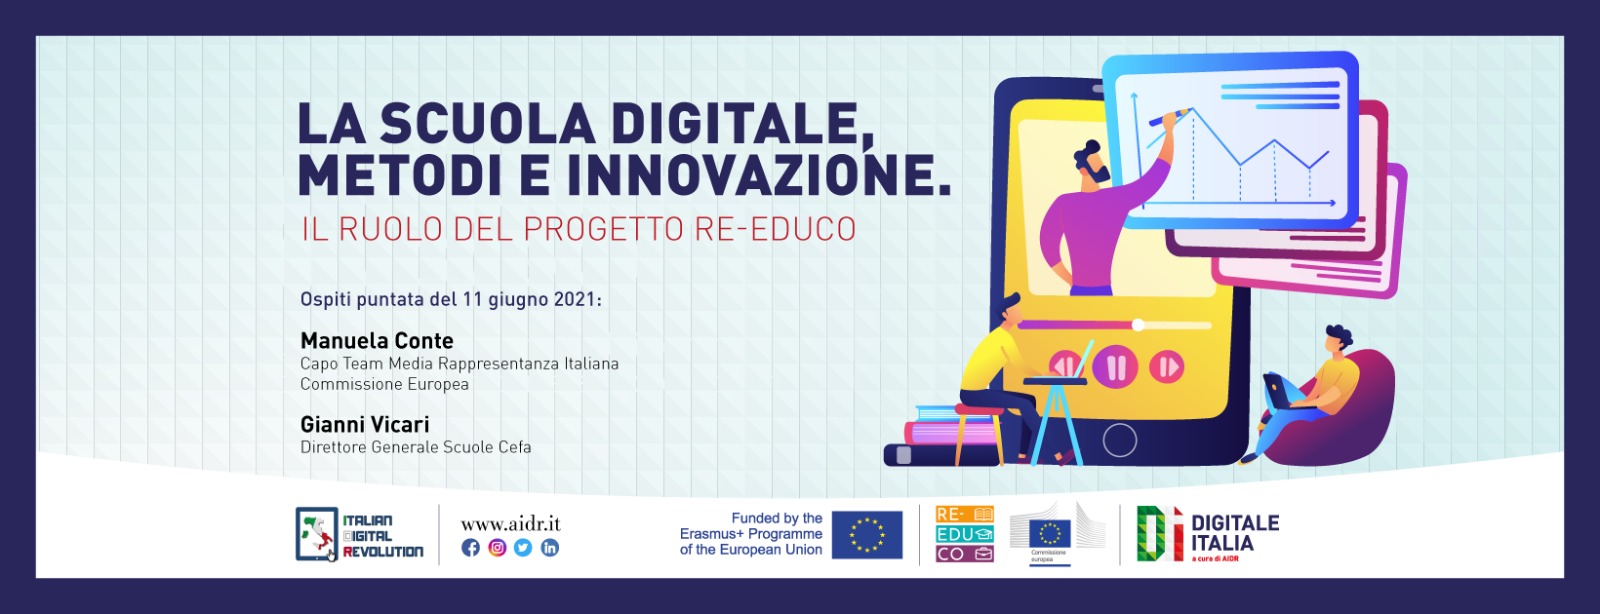 La scuola tra metodo e innovazione, approfondimento a Digitale Italia